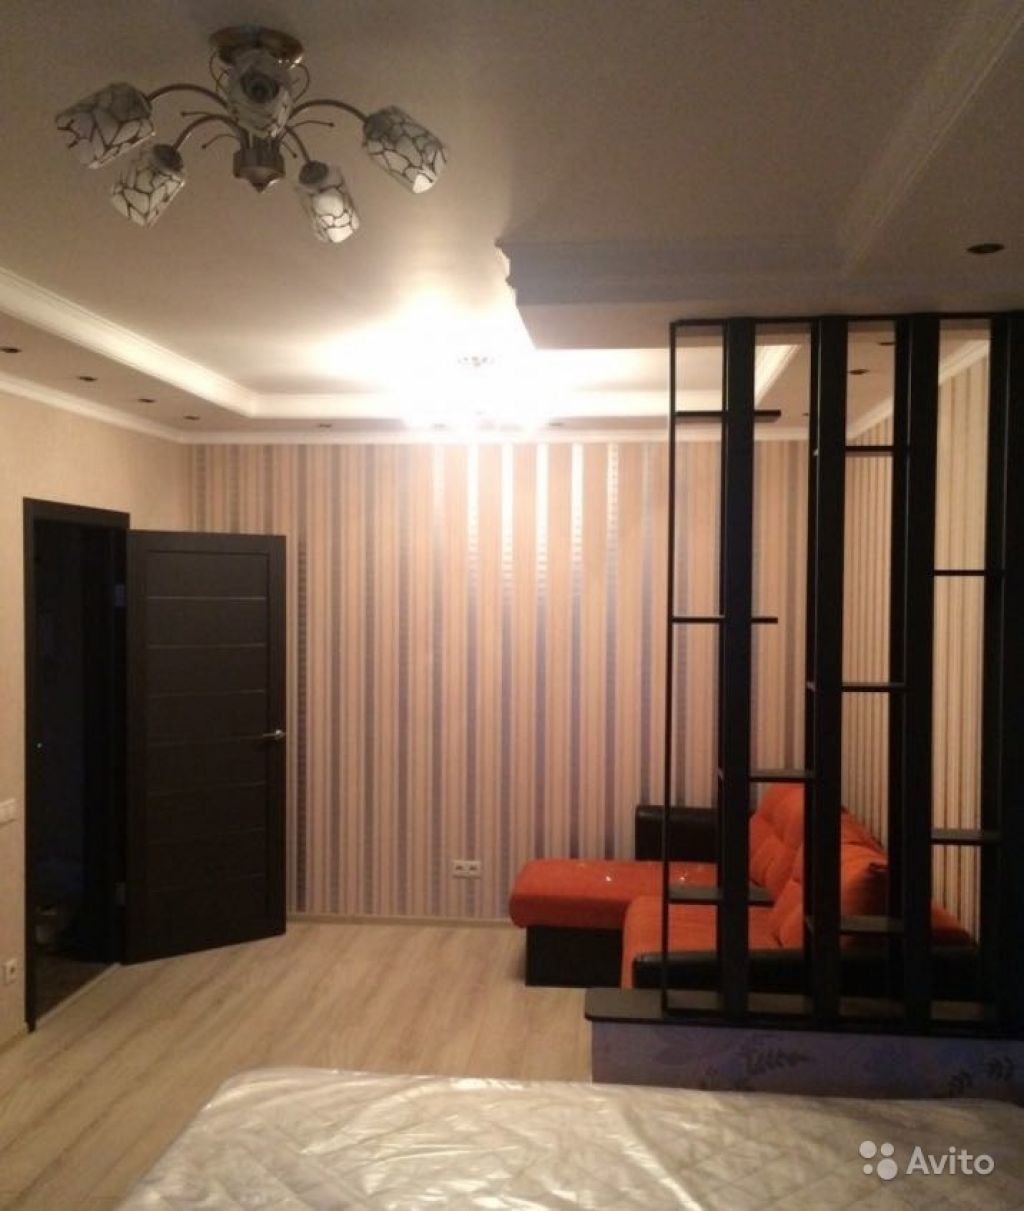 Продам квартиру 1-к квартира 39 м² на 14 этаже 17-этажного панельного дома в Москве. Фото 1